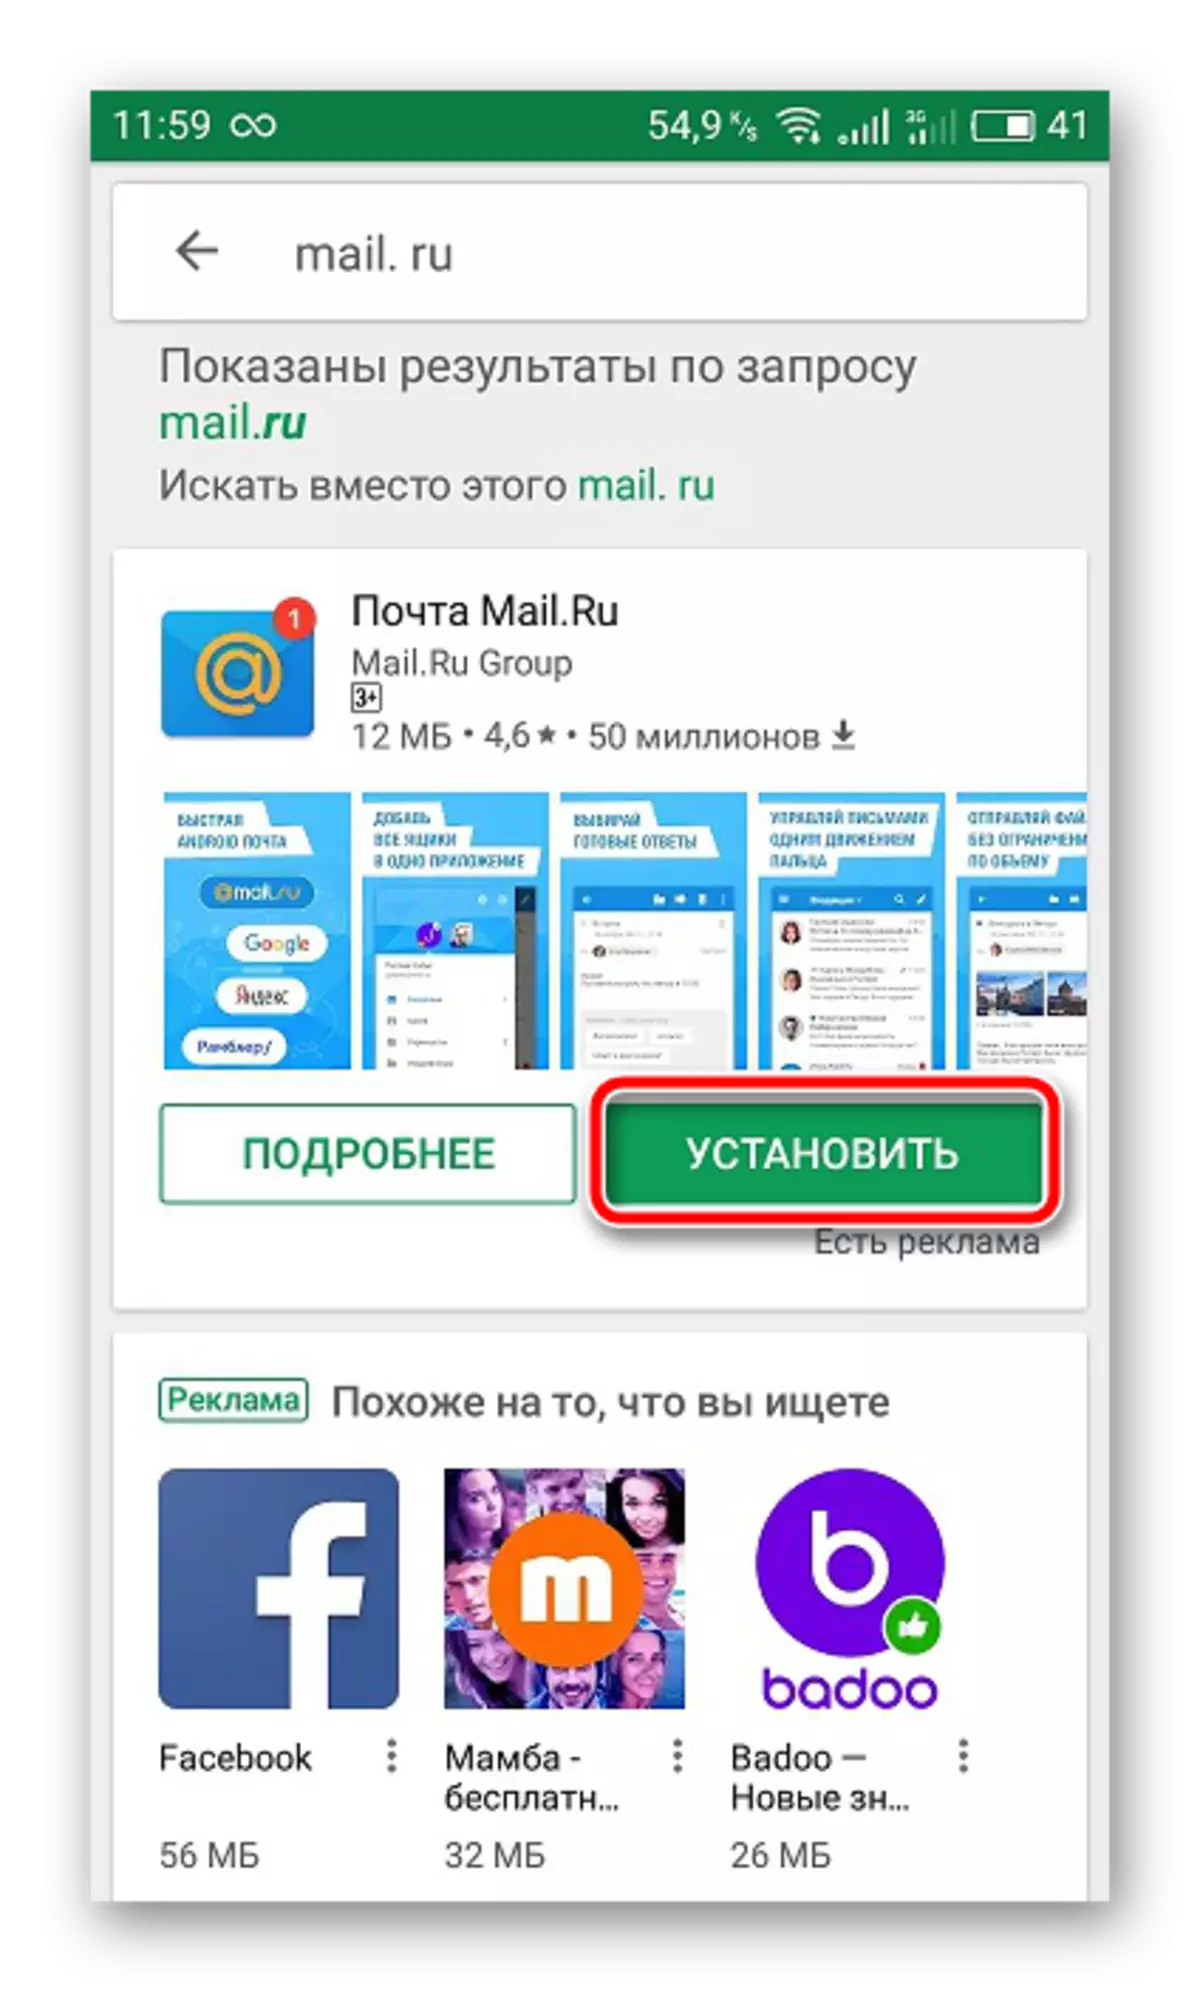 下载邮件客户端mail.ru